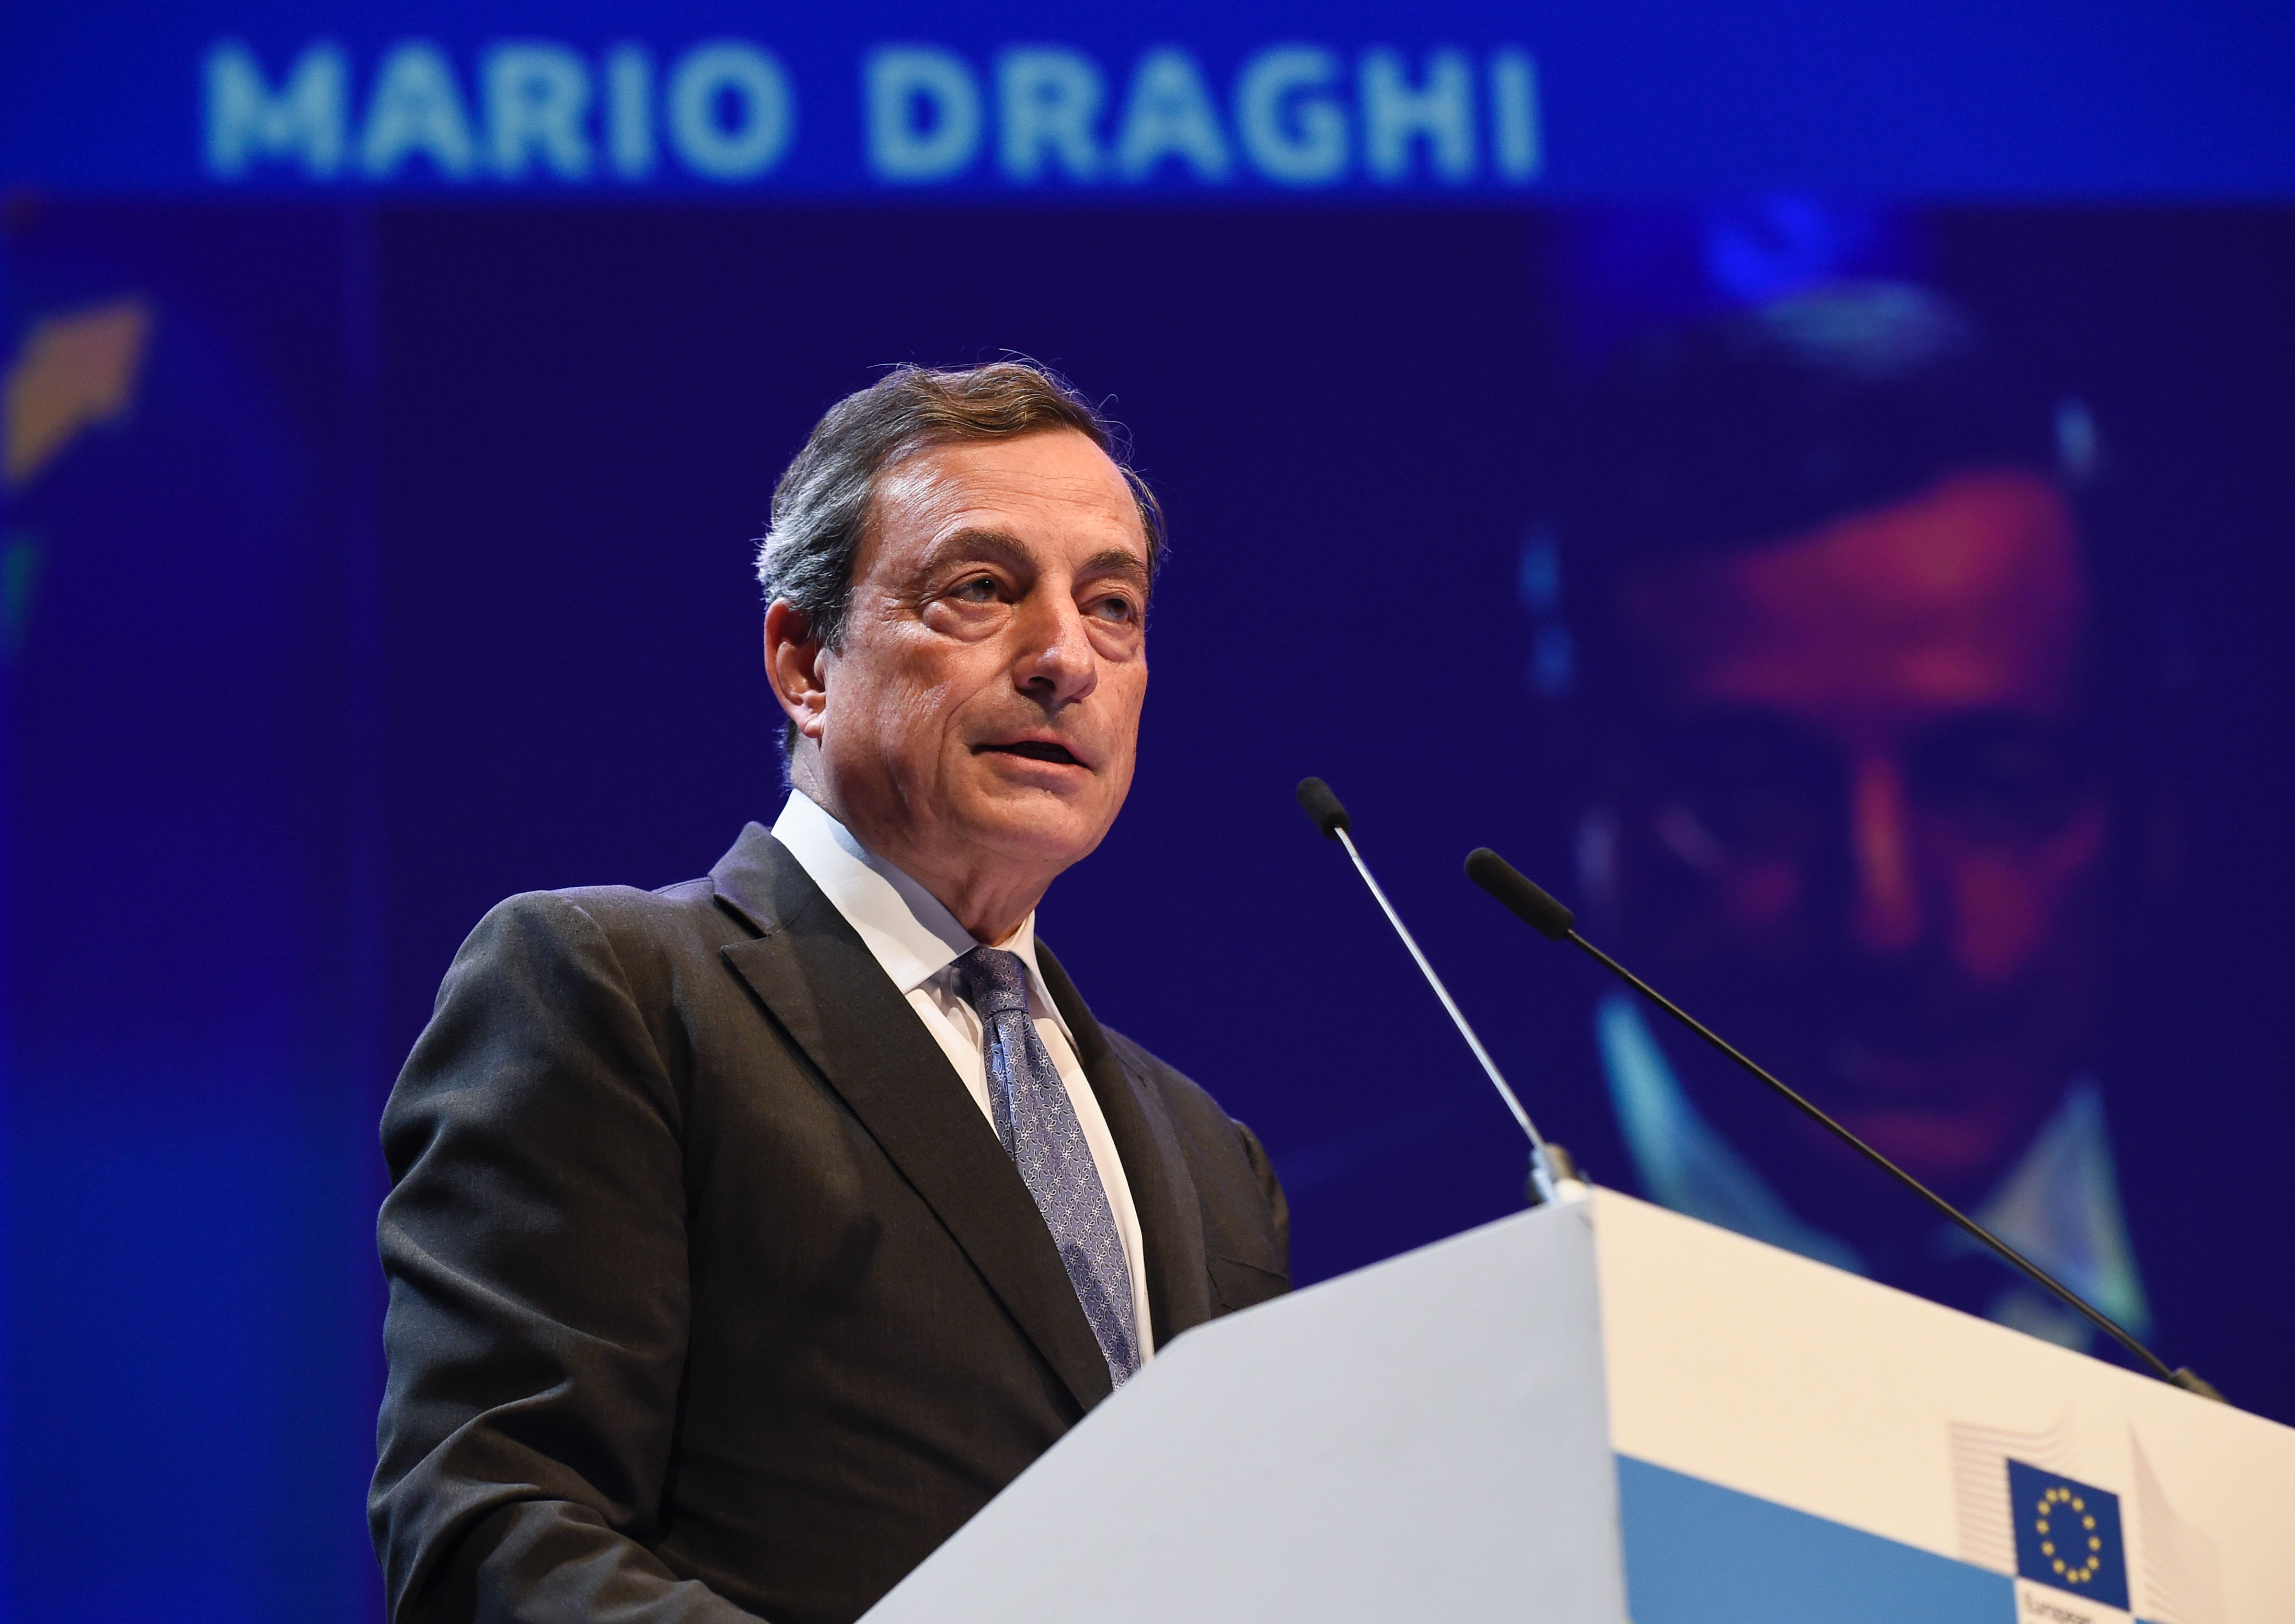 Brexit: Draghi rechnet mit weniger Wachstum im Eurogebiet